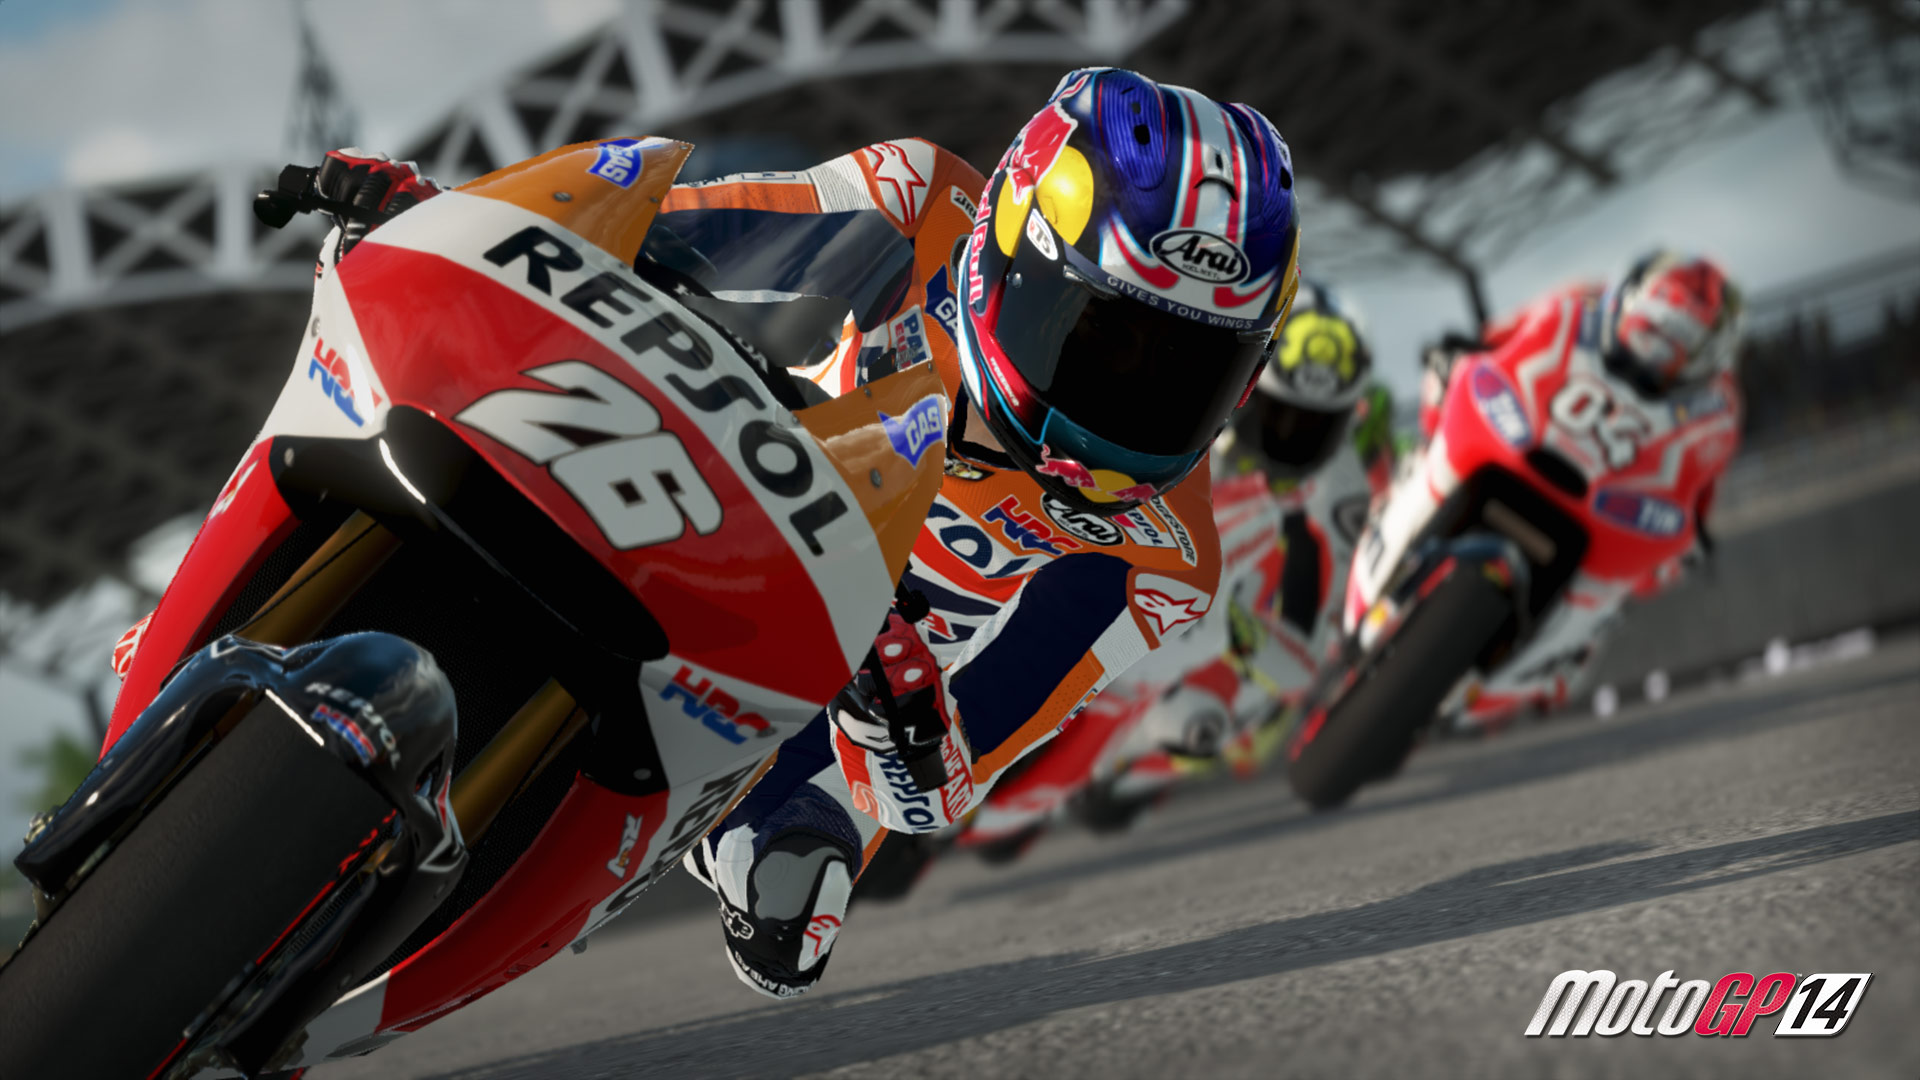 MotoGP 14 HD wallpapers, Desktop wallpaper - most viewed